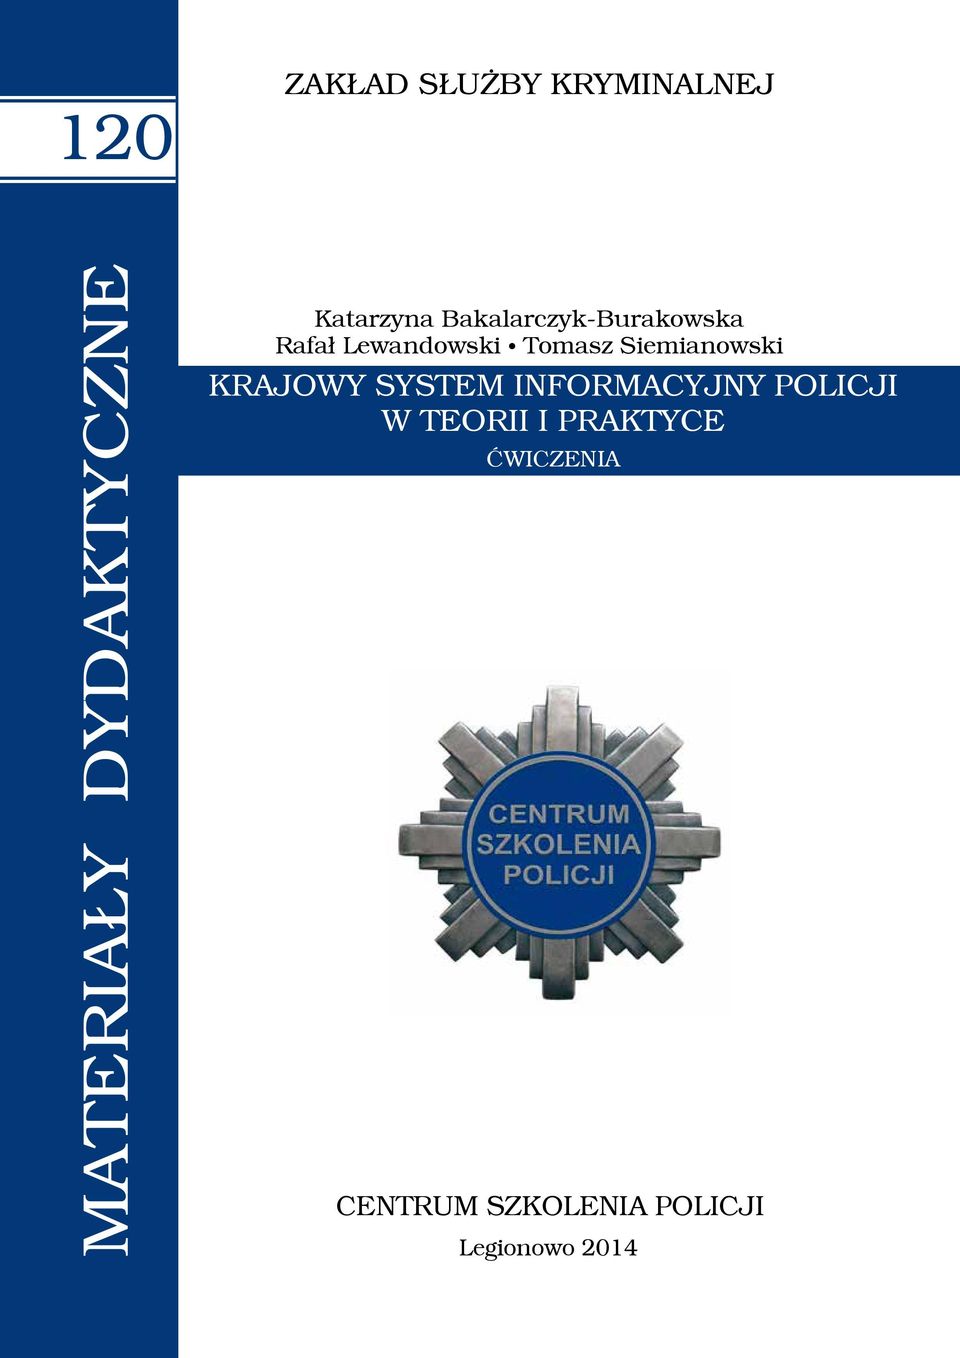 Siemianowski KRAJOWY SYSTEM INFORMACYJNY POLICJI W TEORII